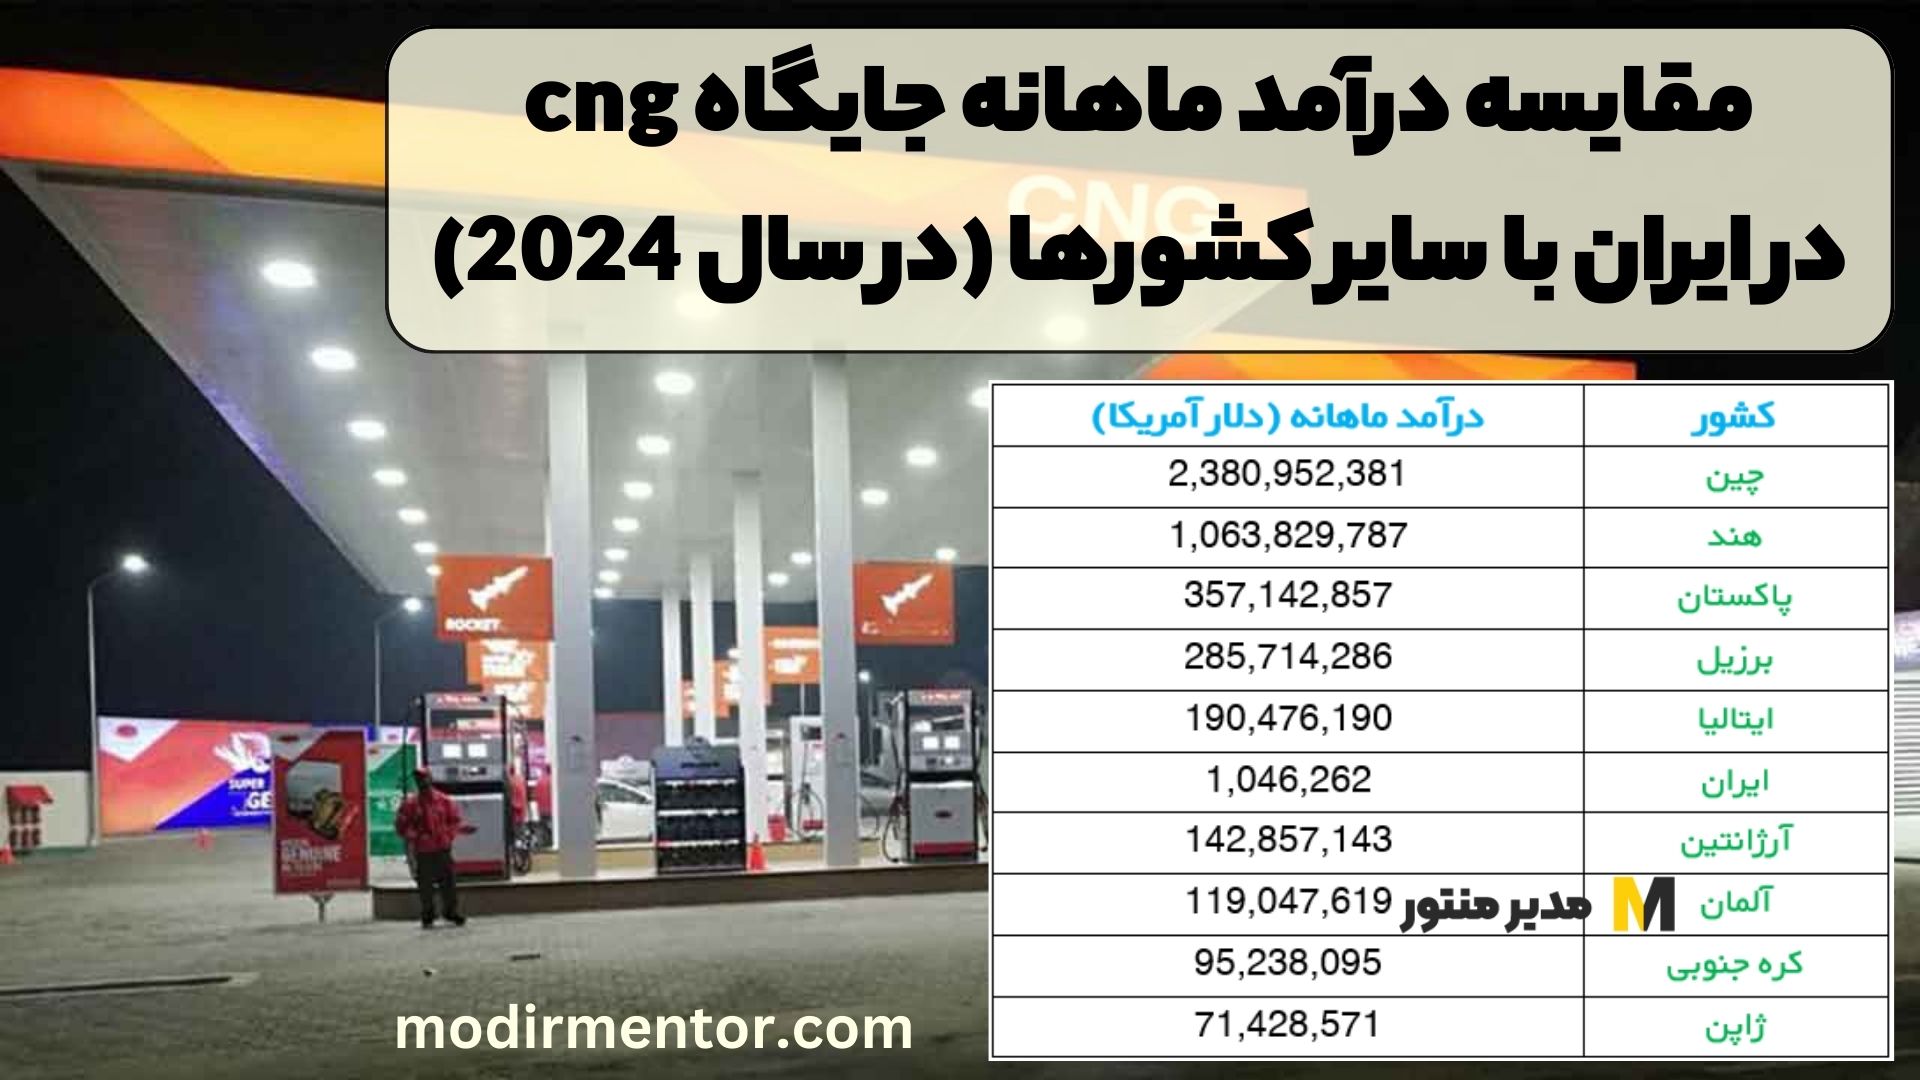 مقایسه درآمد ماهانه جایگاه CNG در ایران با سایر کشورها (در سال 2024)